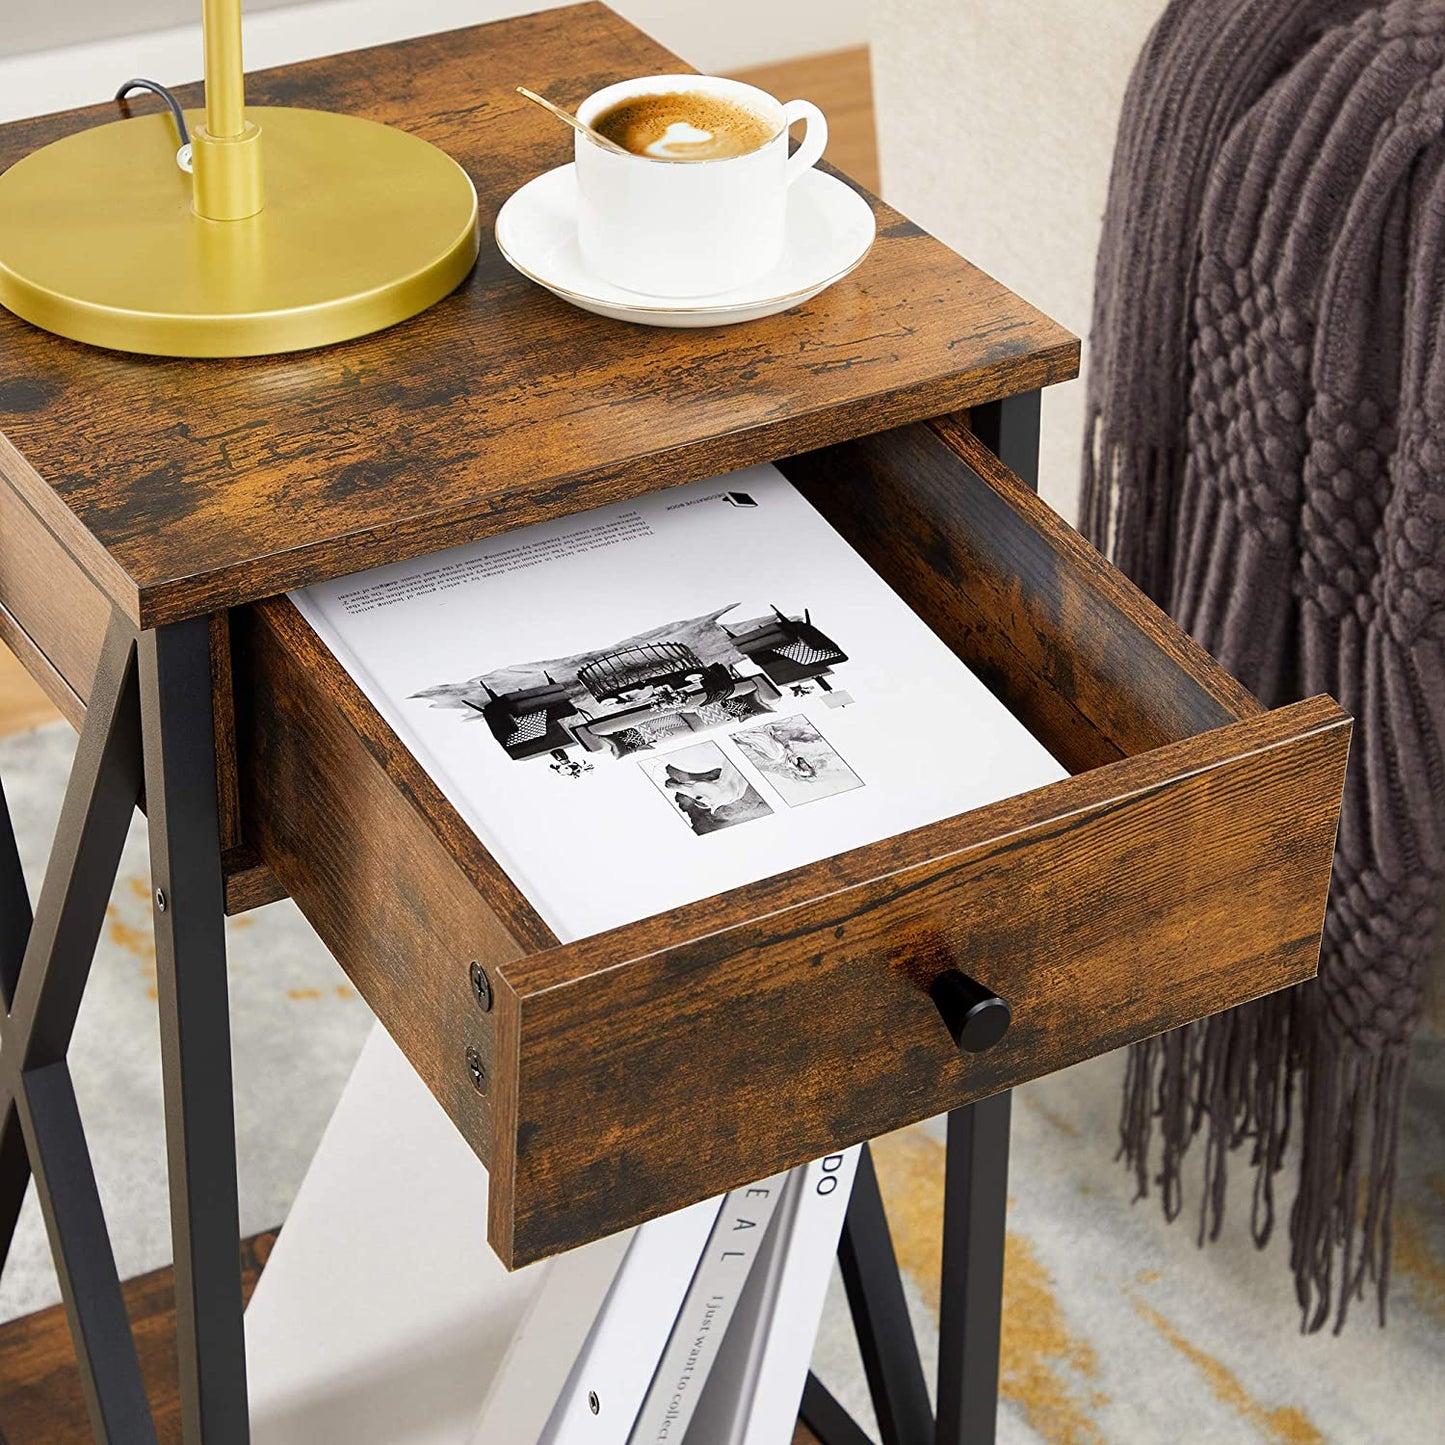 Table de chevet Nancy's Grenada - Table d'appoint - Tiroir - 2 Etagères - 35 x 35 x 70 cm - Industriel - Vintage - Marron-Noir